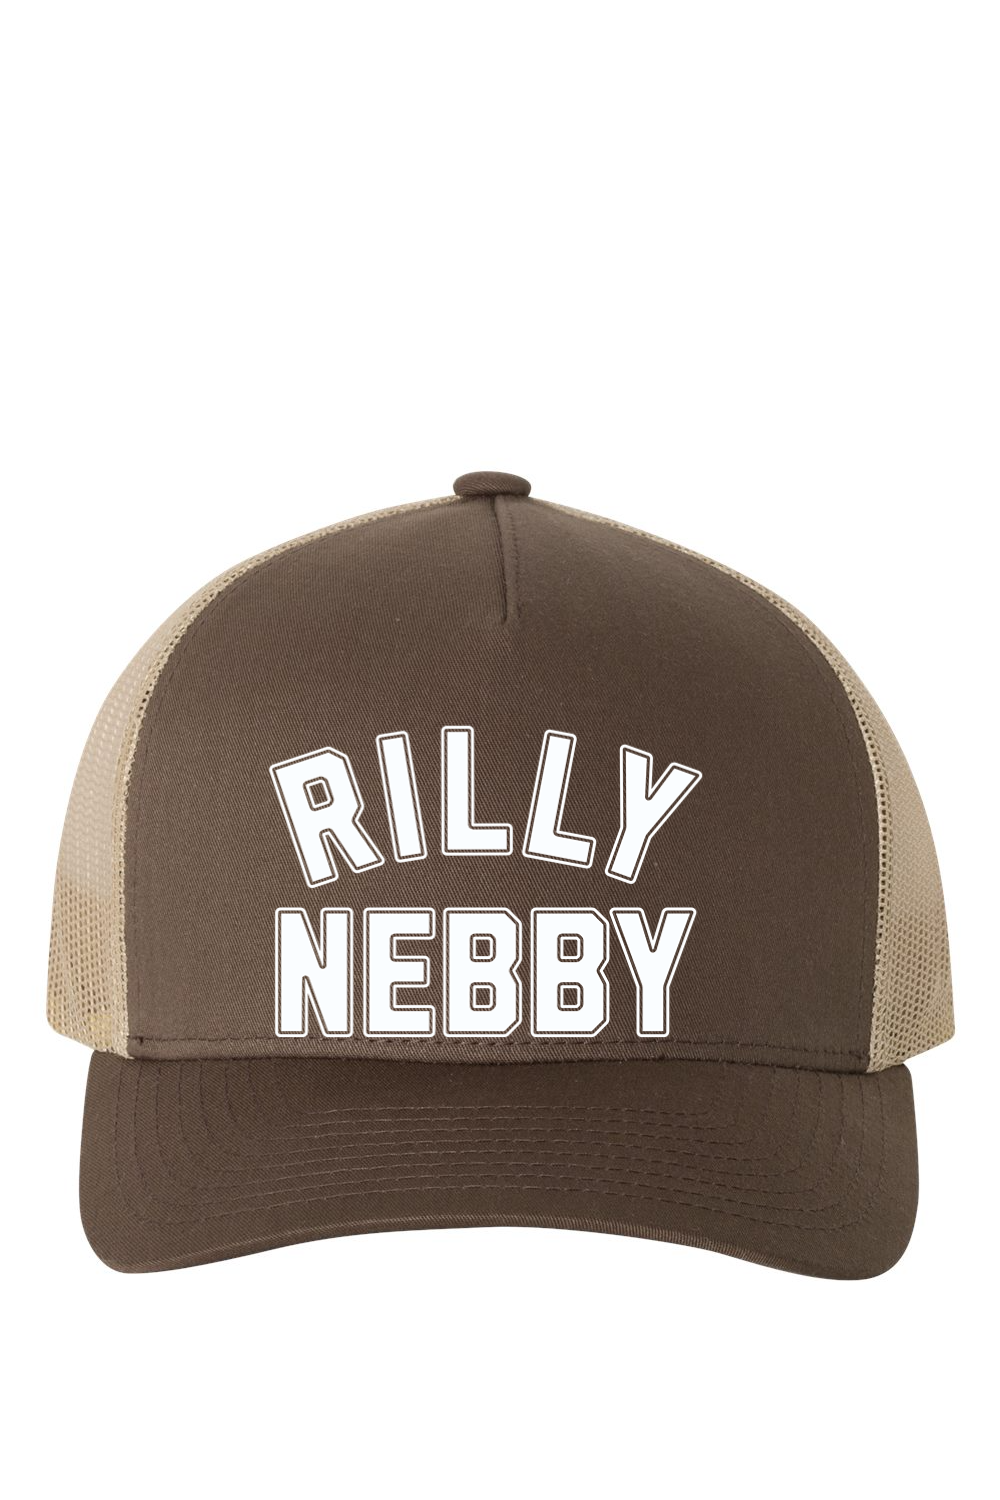 Rilly Nebby - Classic Snapback Hat - Yinzylvania